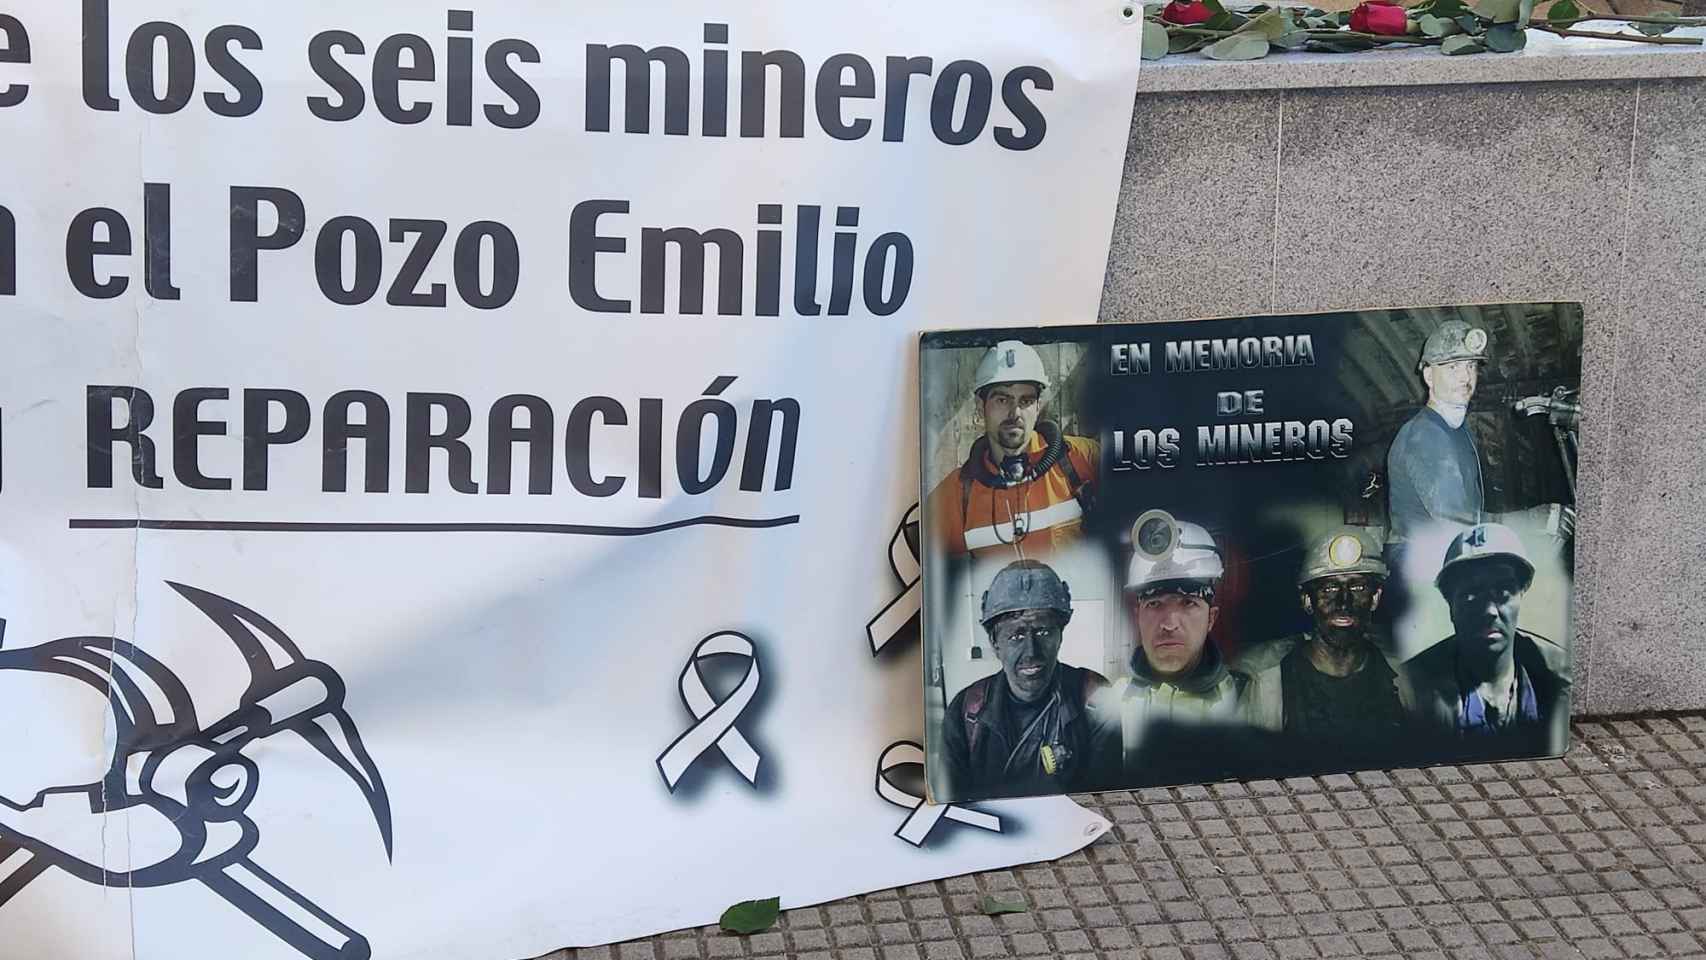 Foto con la imagen de los seis mineros fallecidos